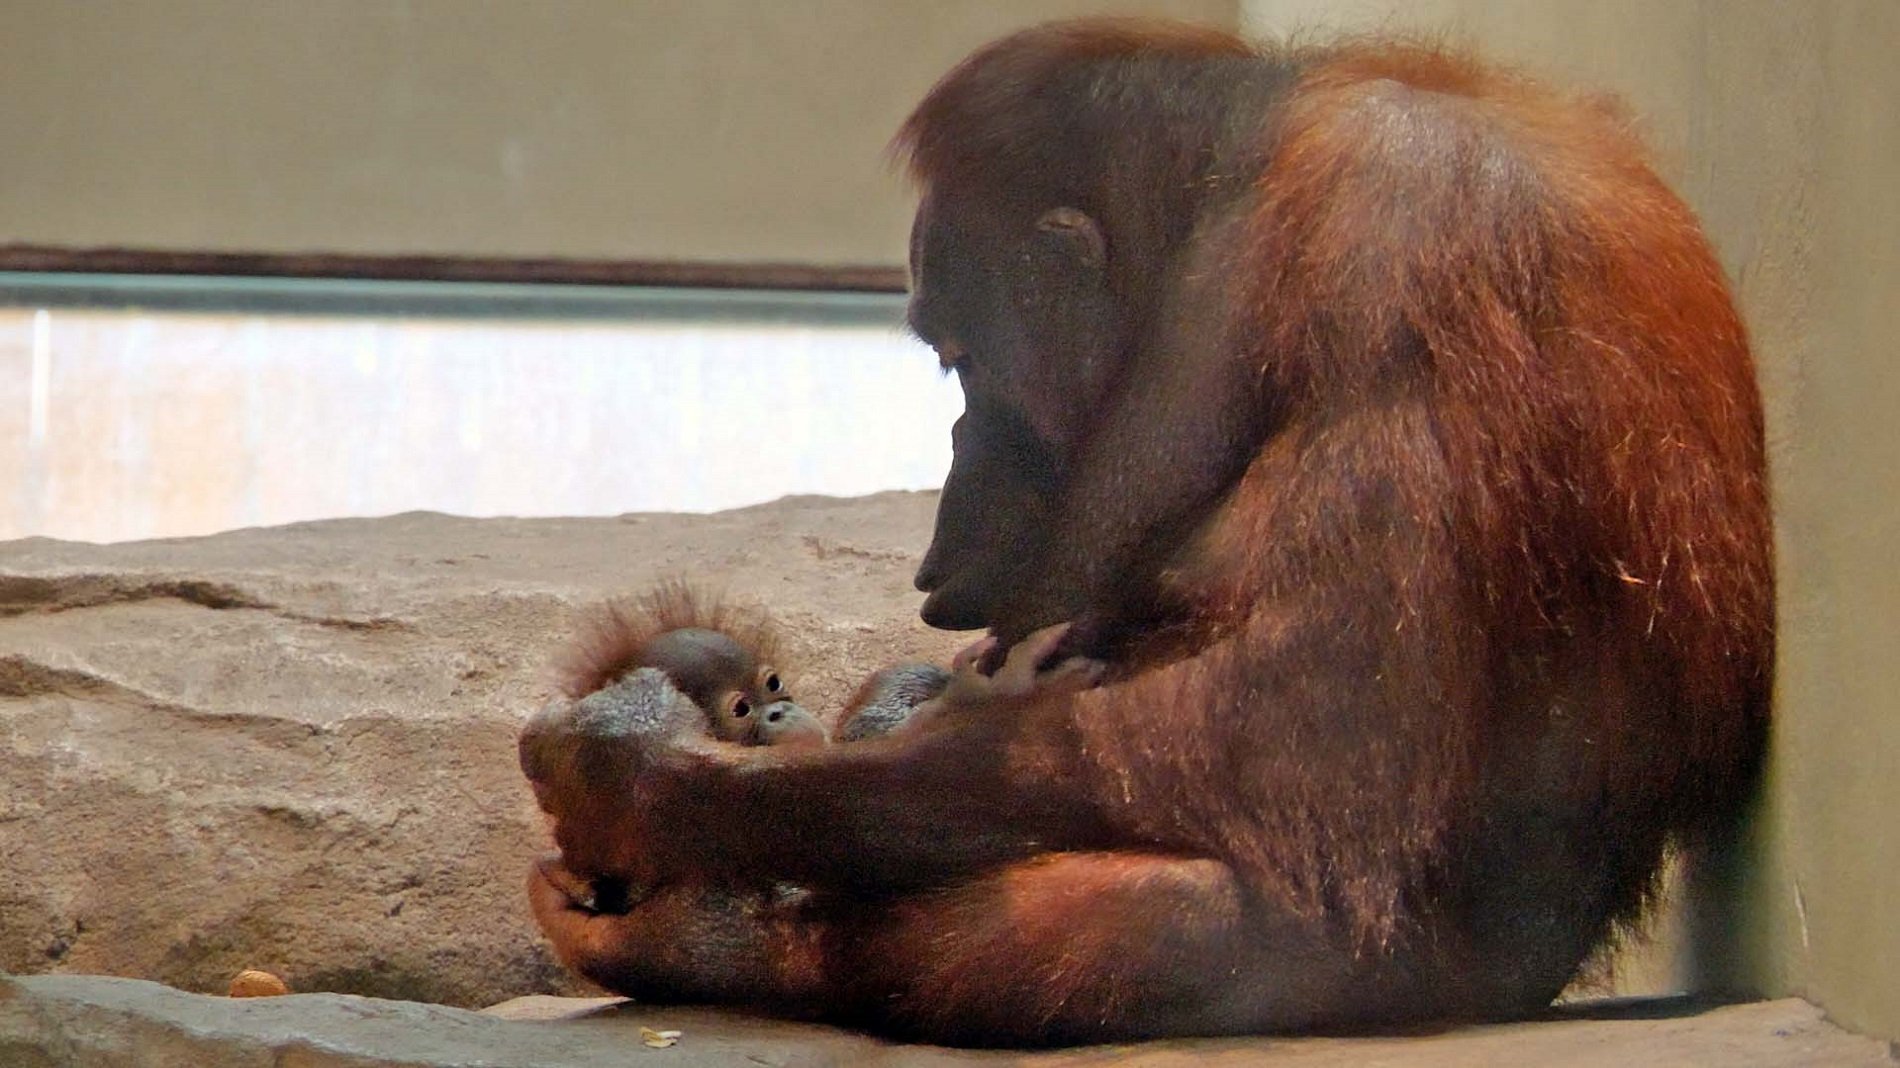 Neix una cria d'orangutan de Borneo al Zoo de Barcelona